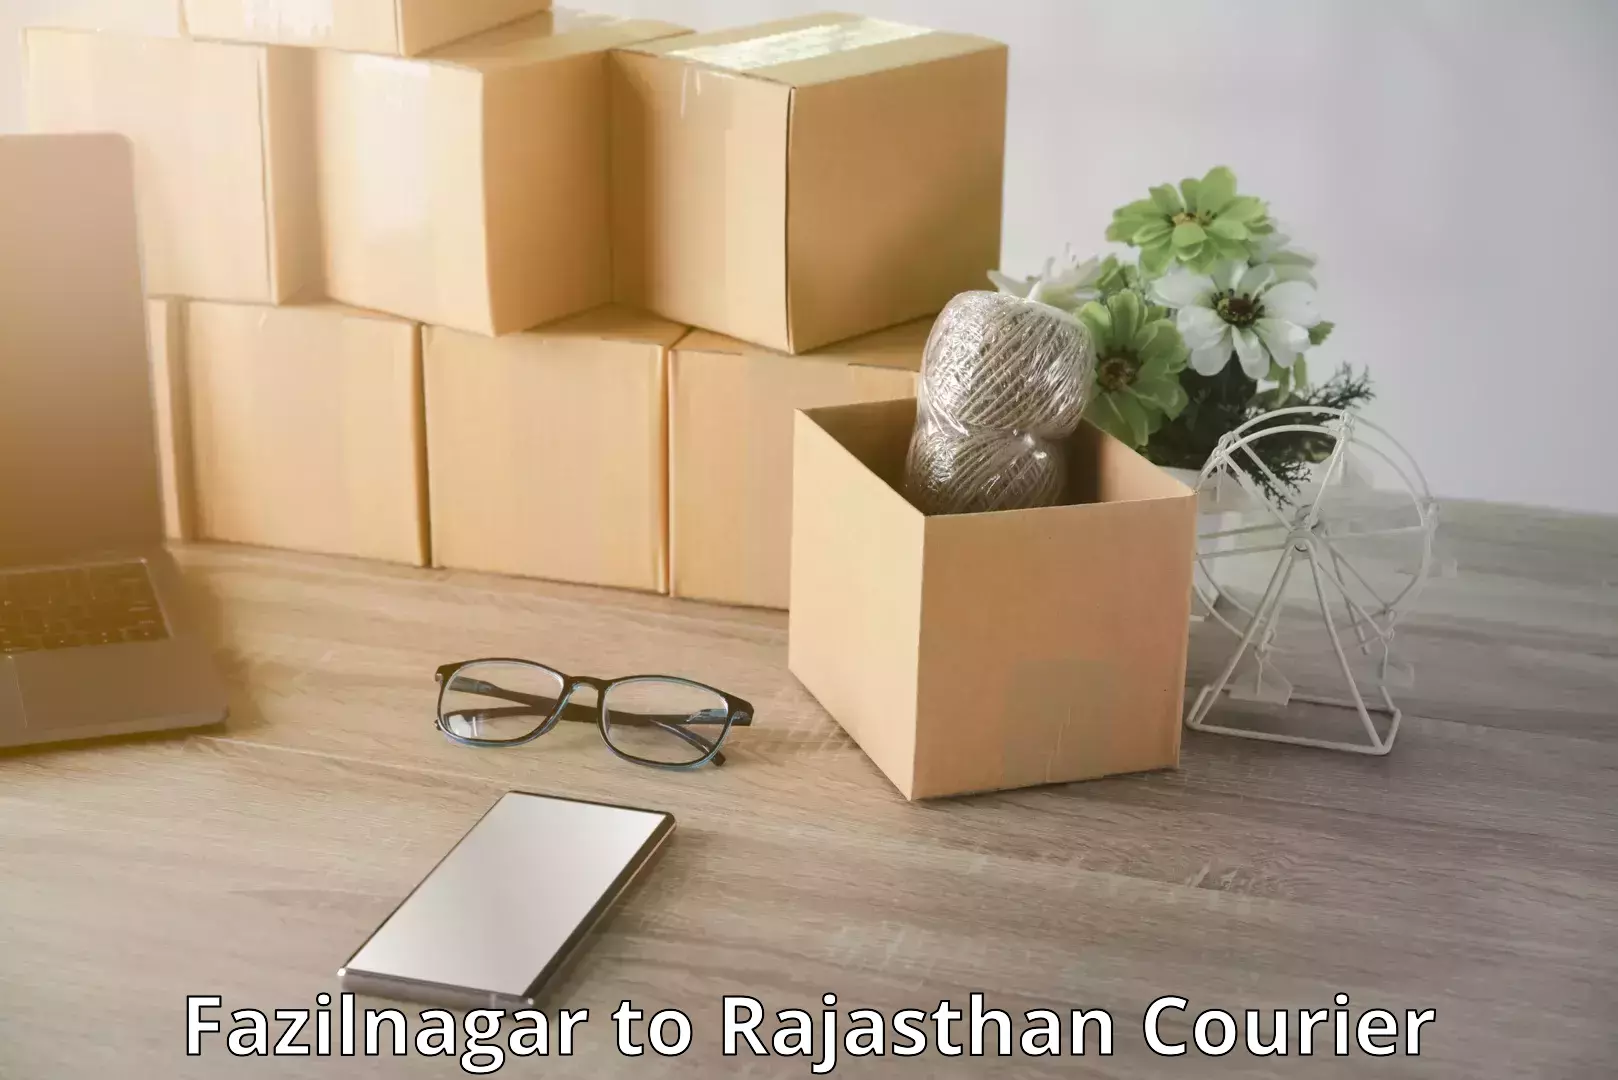 Baggage transport network Fazilnagar to Rajasthan